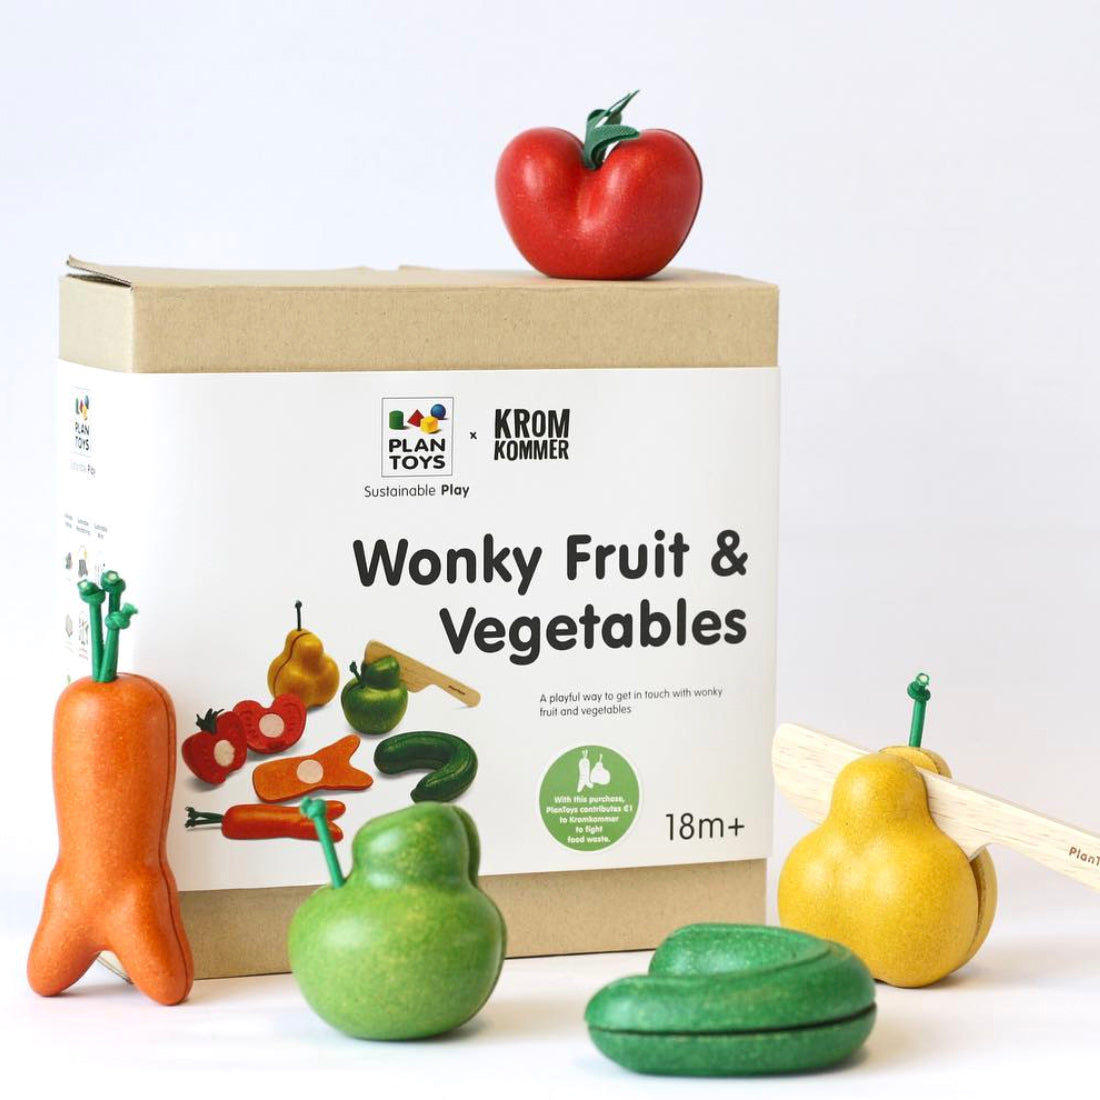 Wonky Fruit & Vegetables - Summer Made